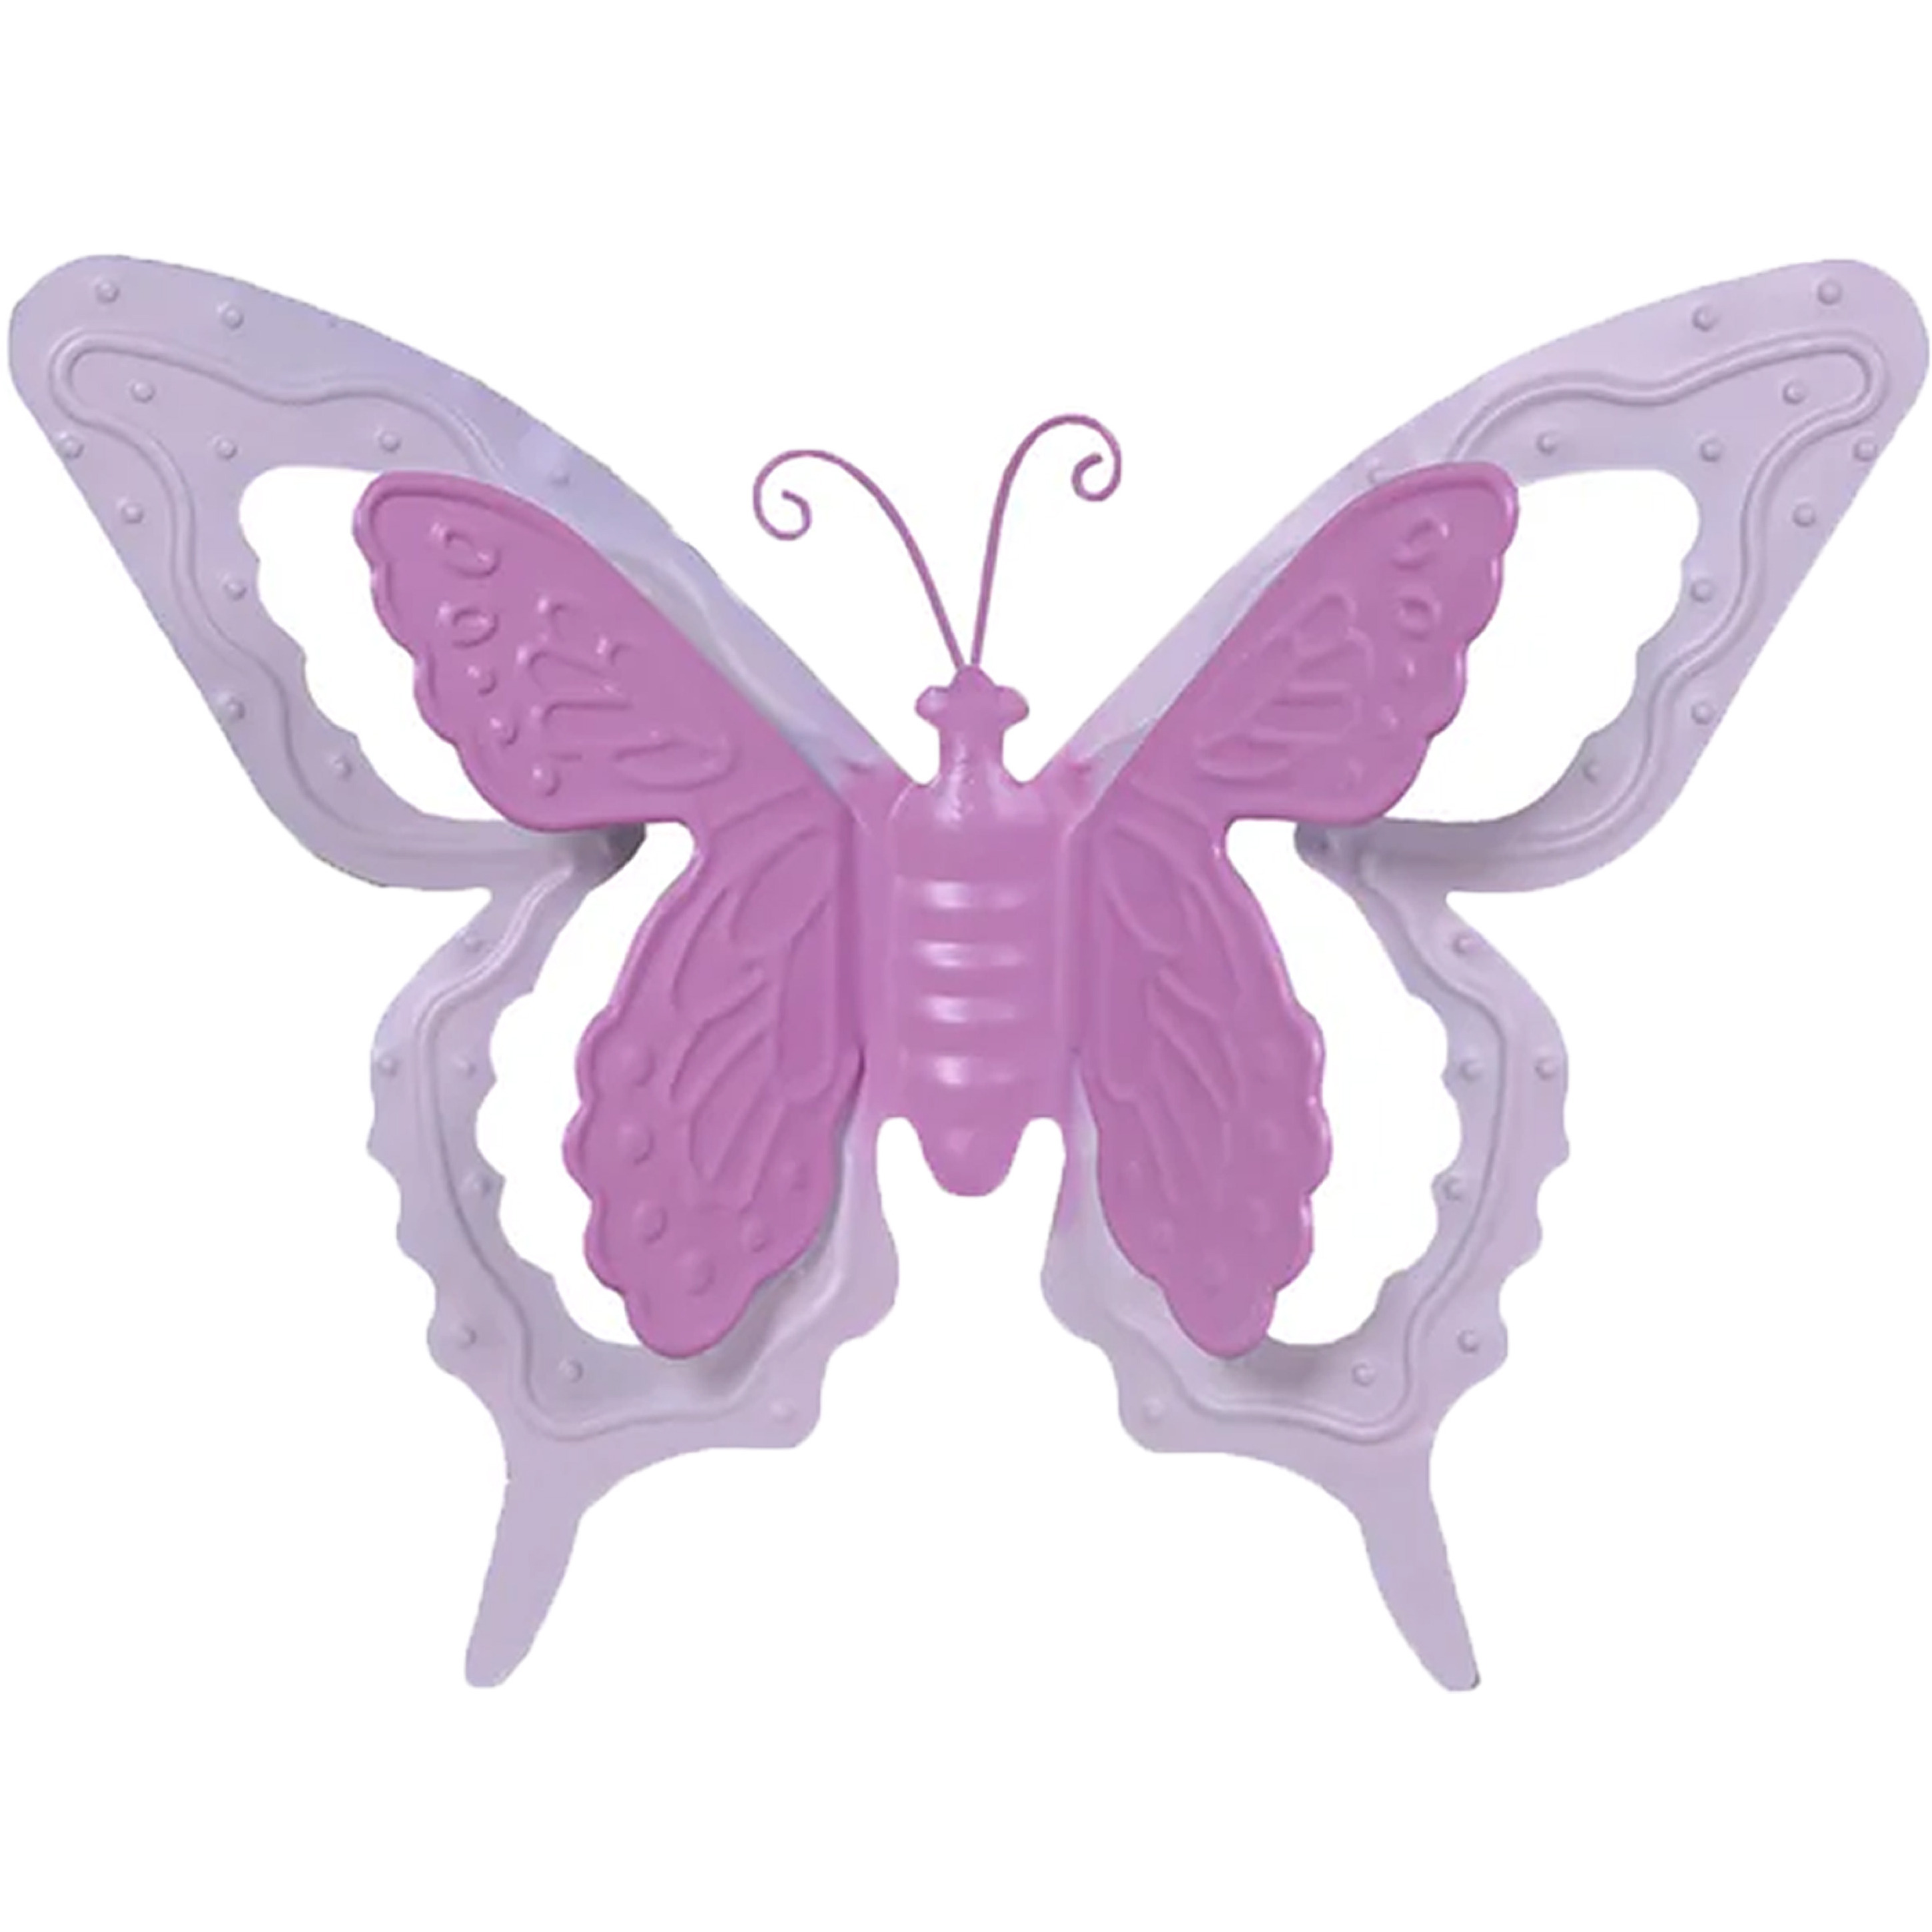 Tuin-schutting decoratie vlinder metaal roze 46 x 34 cm extra groot